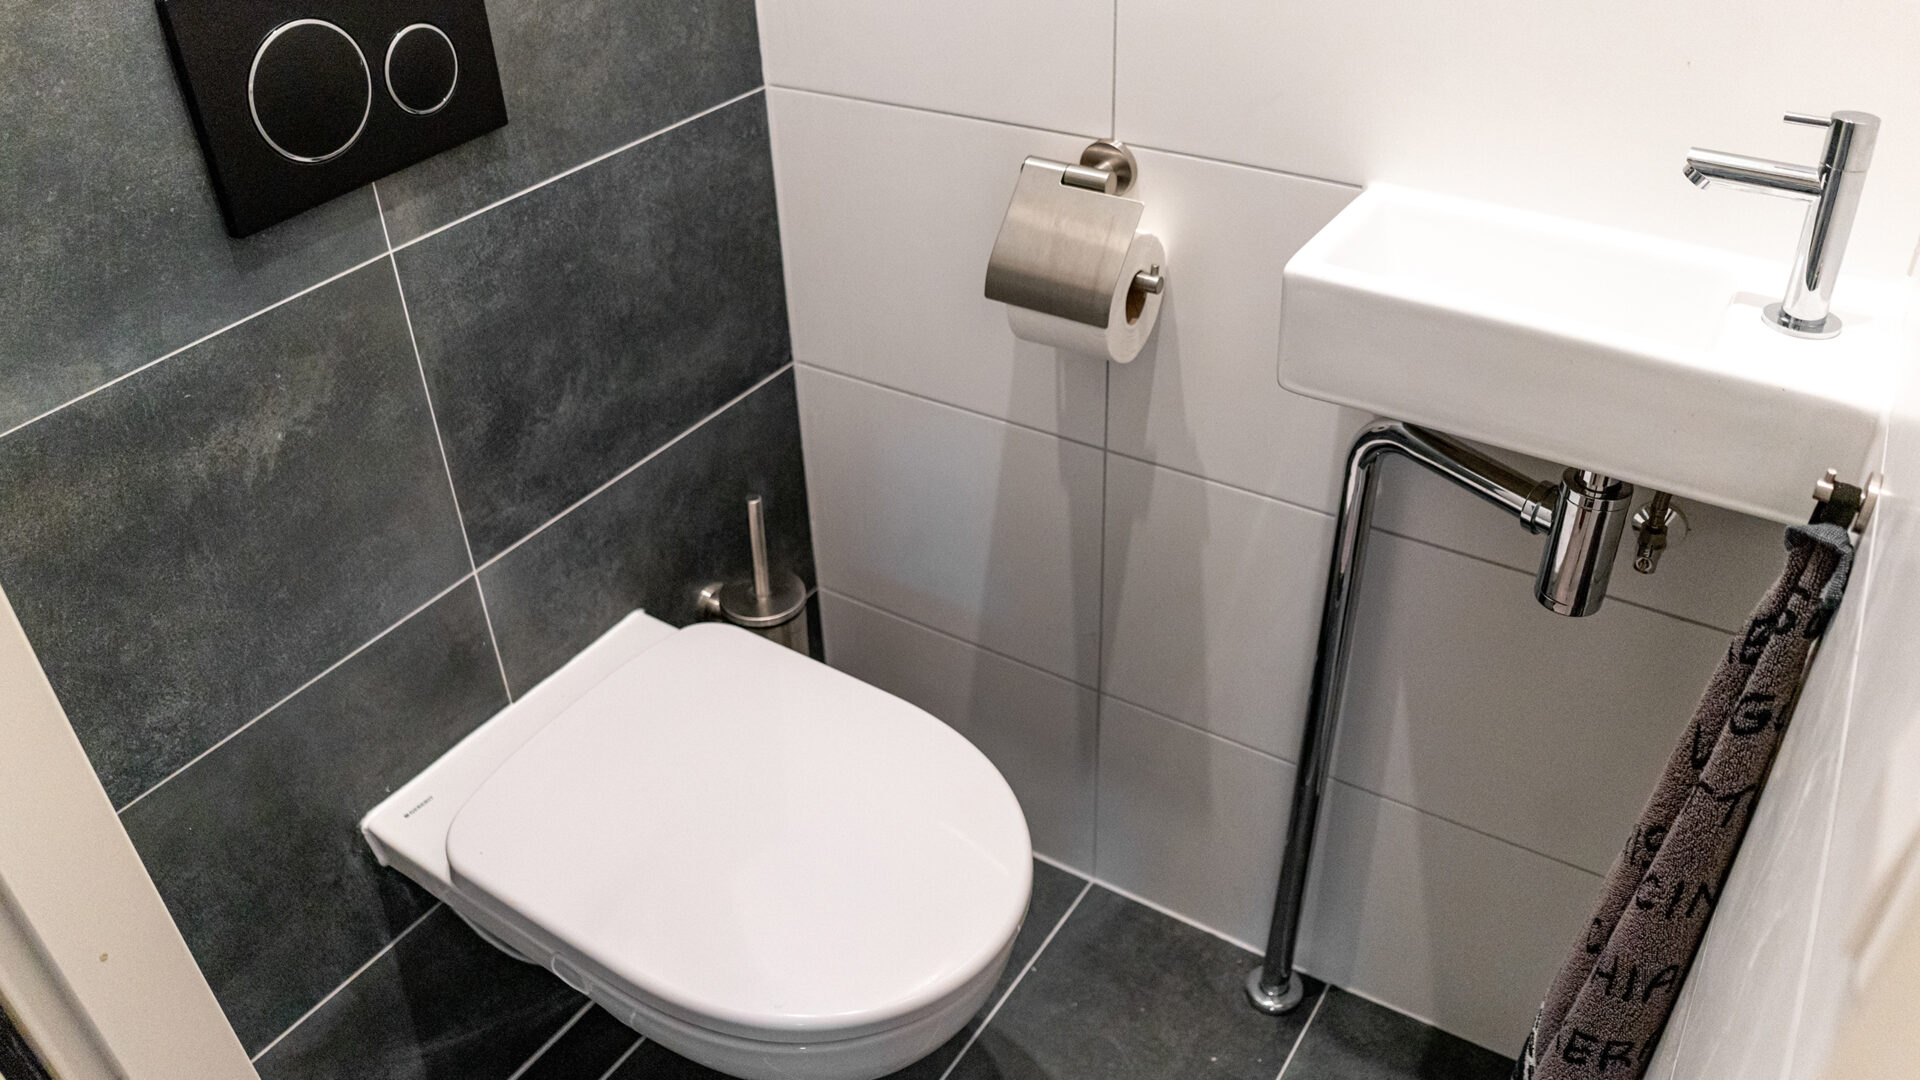 schudden In tegenspraak Goodwill Klein Toilet Inrichten: creëer een gezellige WC - Toilet Direct